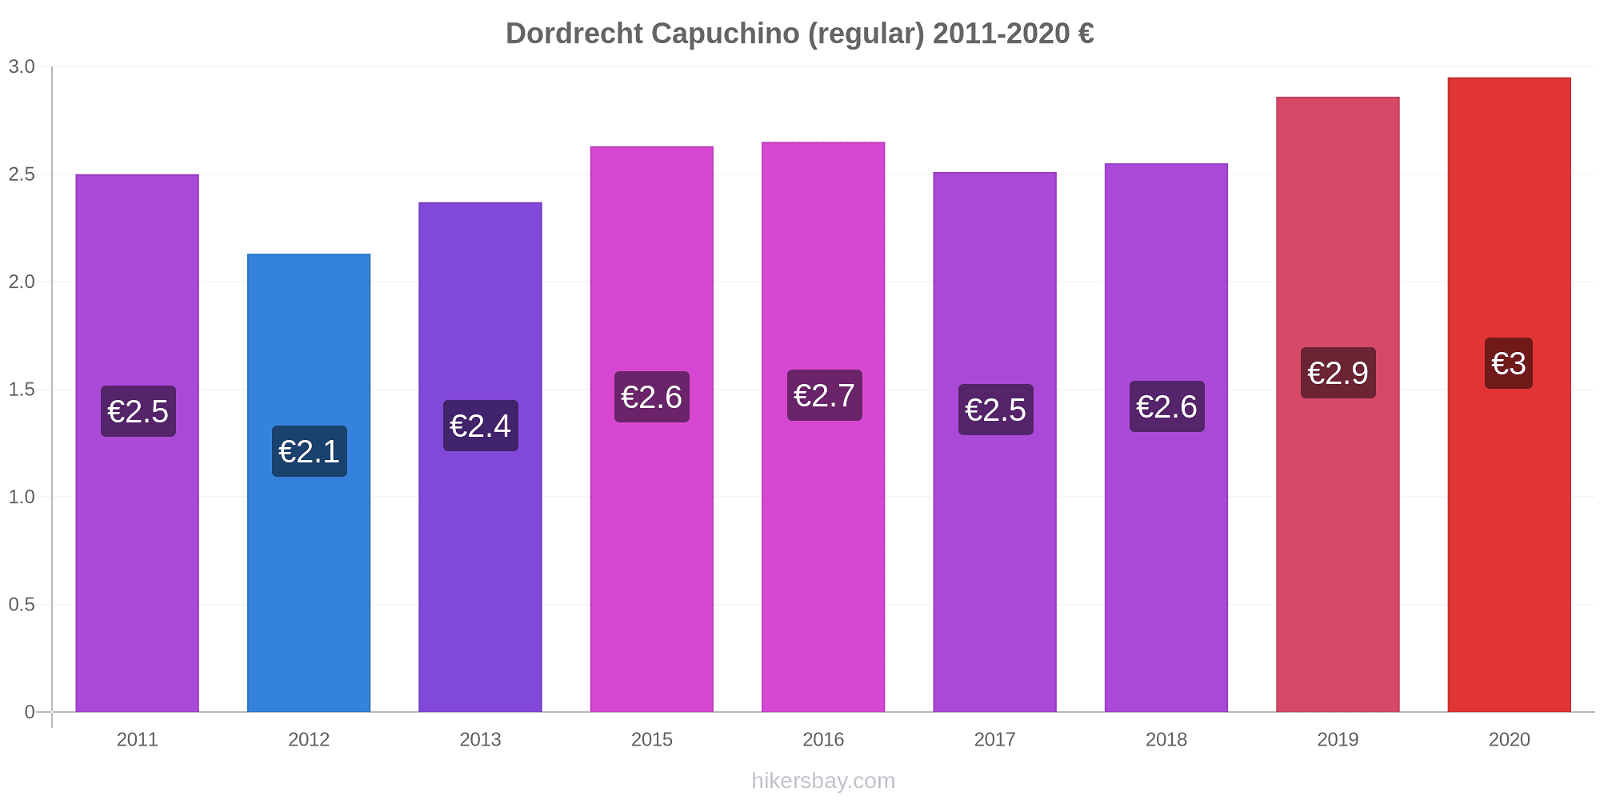 Dordrecht cambios de precios Capuchino (regular) hikersbay.com